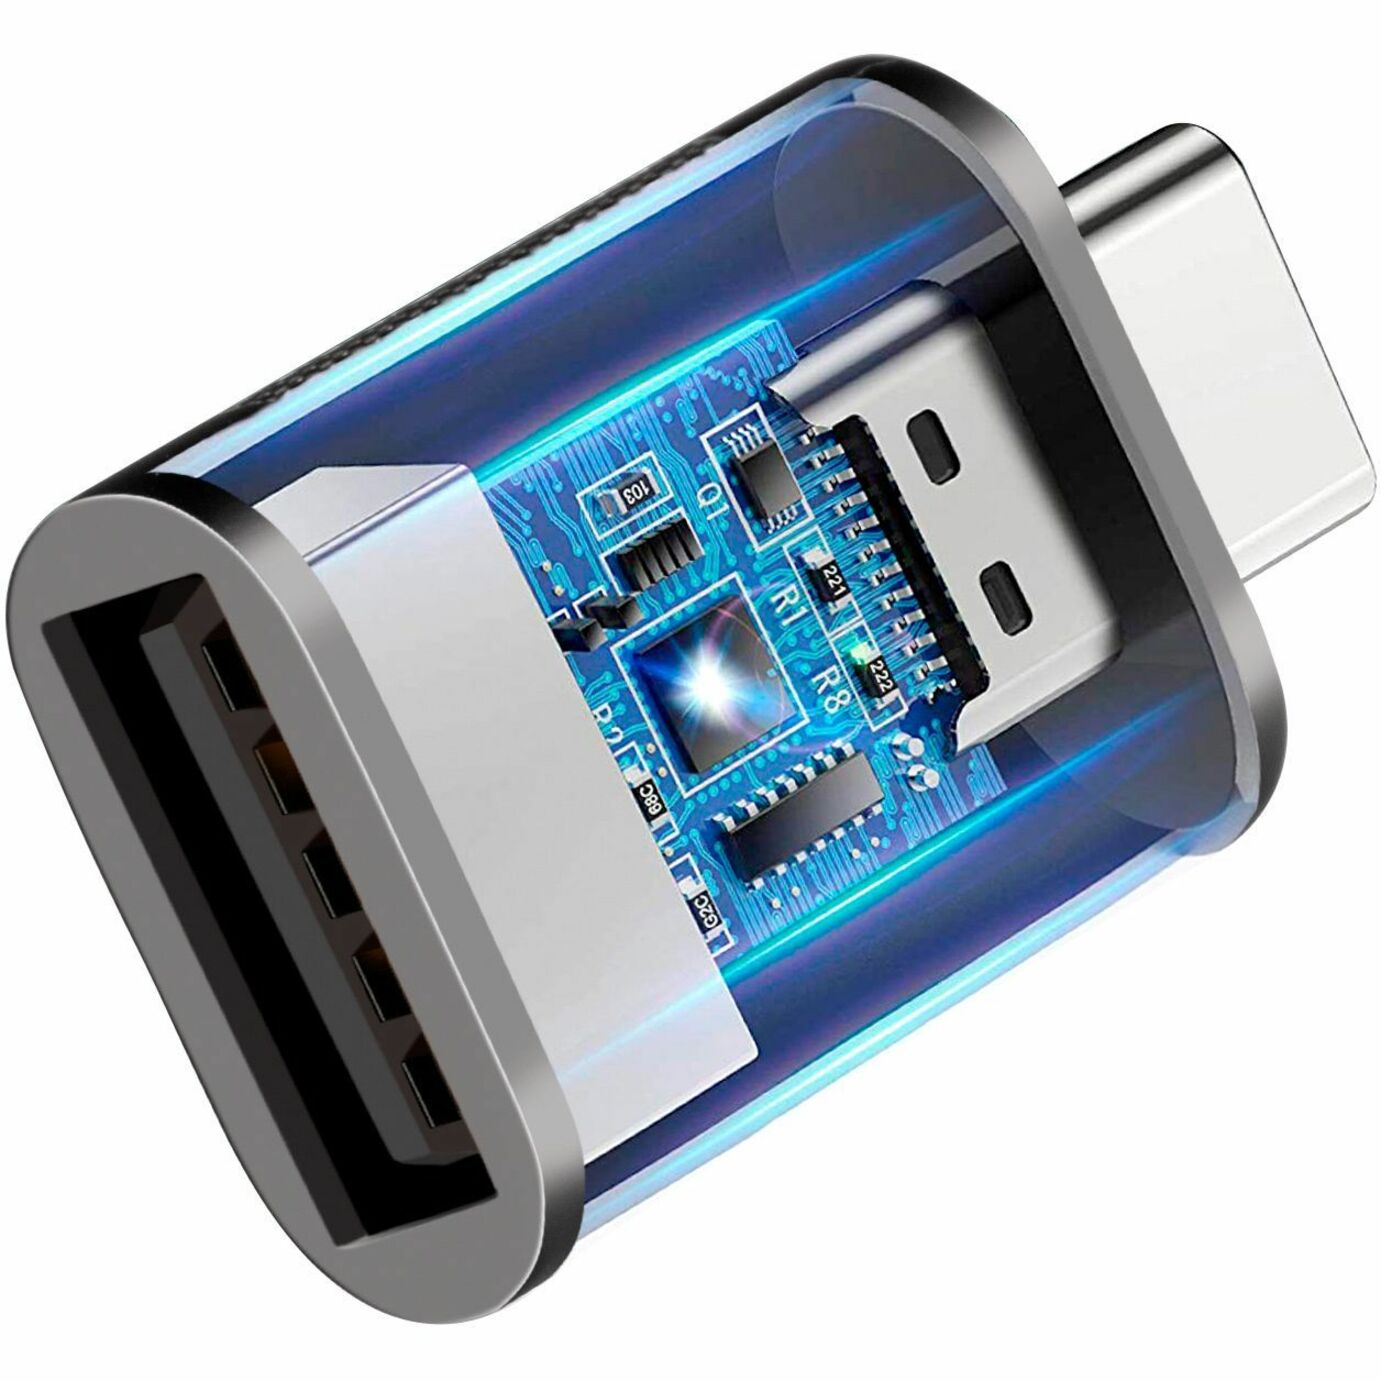 Adesso ADP-300-4 Adaptadores de USB-A hembra a USB-C macho (paquete de 4) Adaptador de transferencia de datos